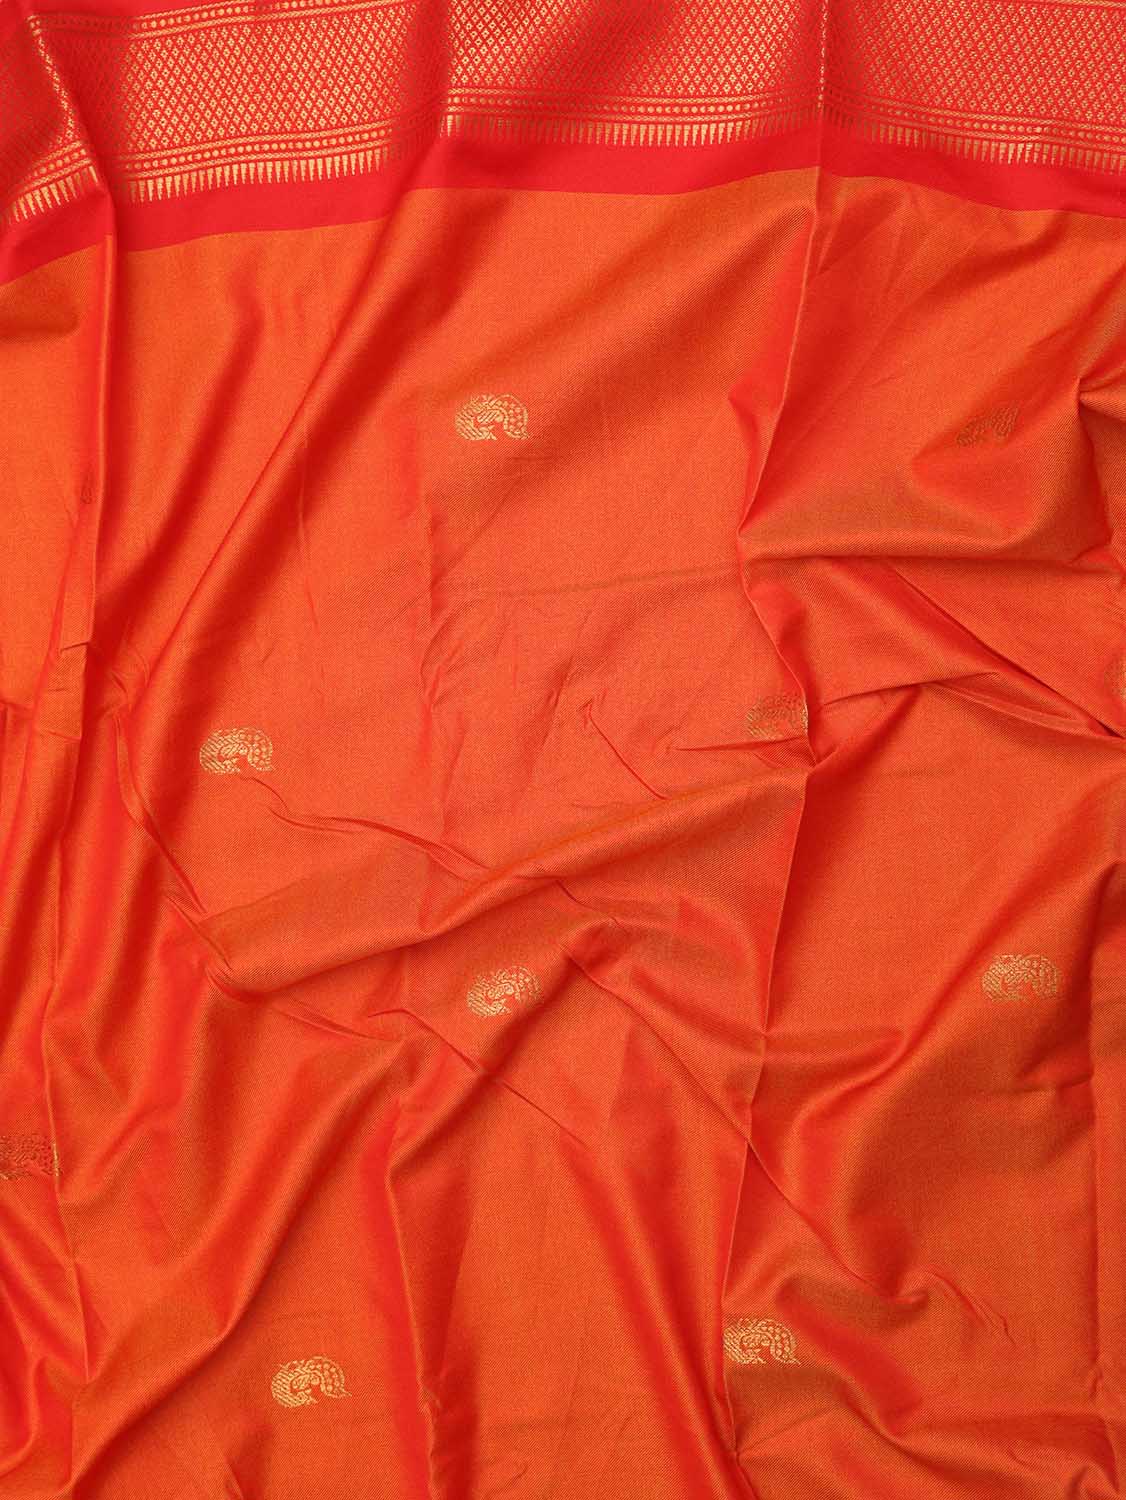 Orange And Red Paithani Cotton Silk Saree - Luxurion World